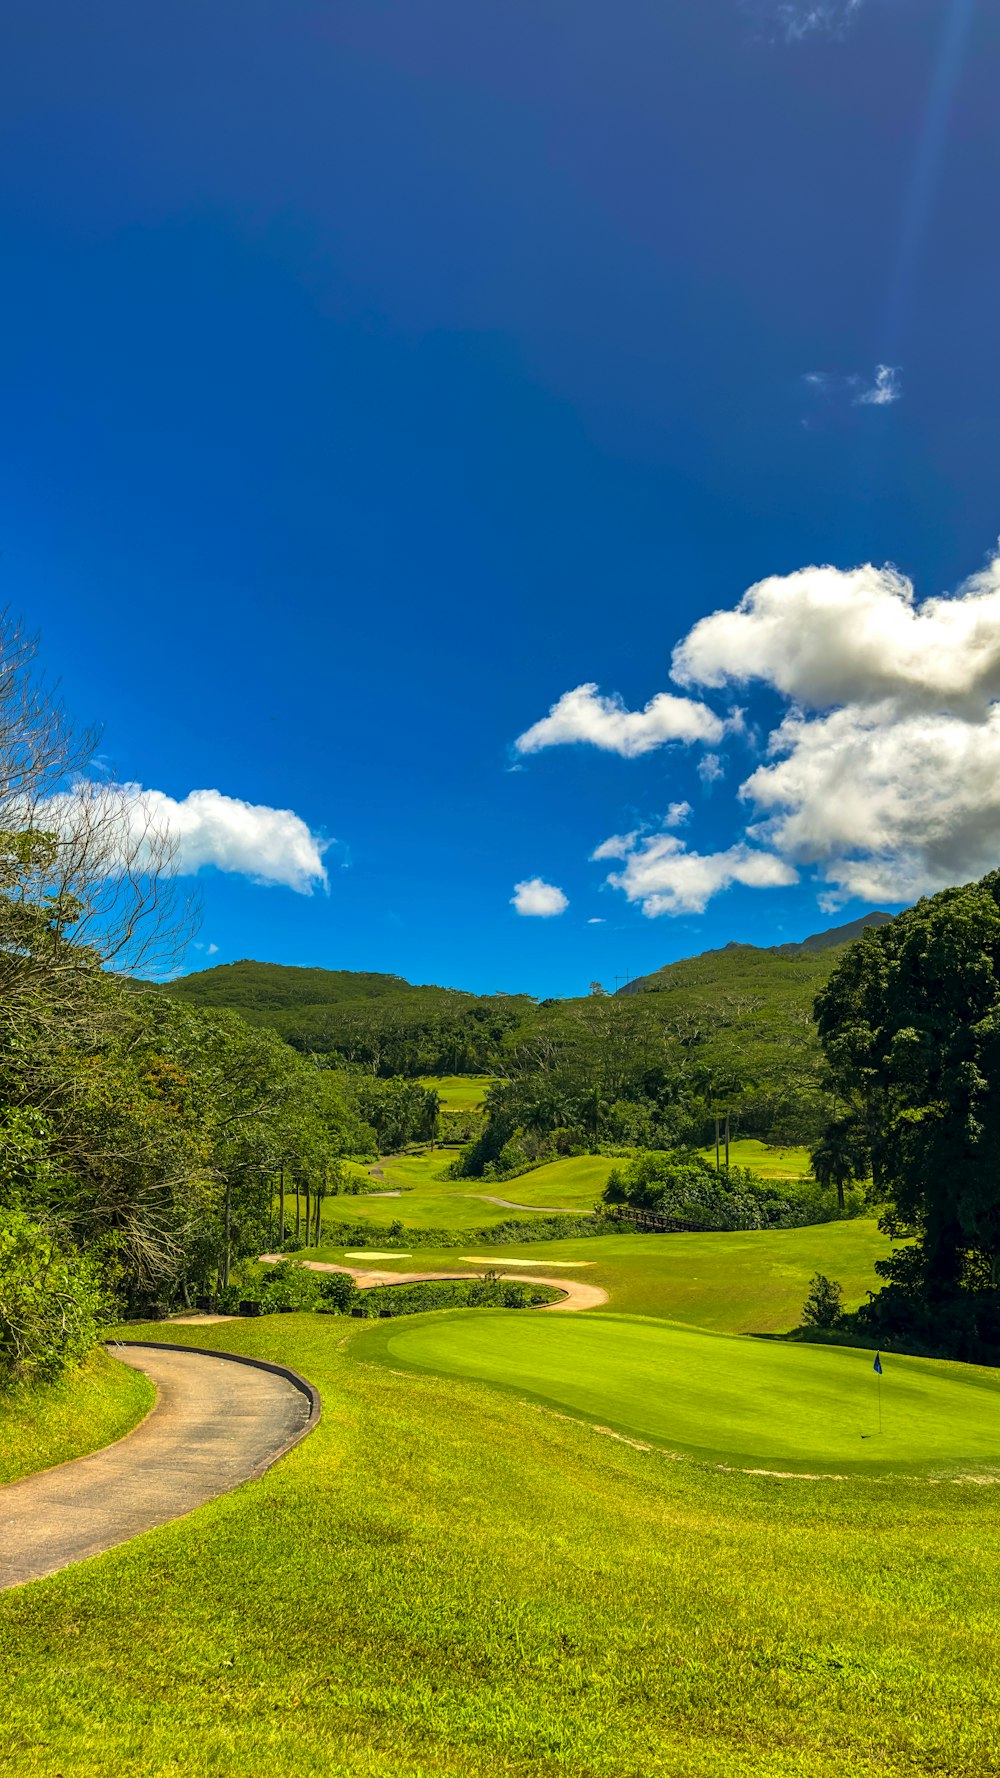 Ein malerischer Blick auf einen grünen Golfplatz